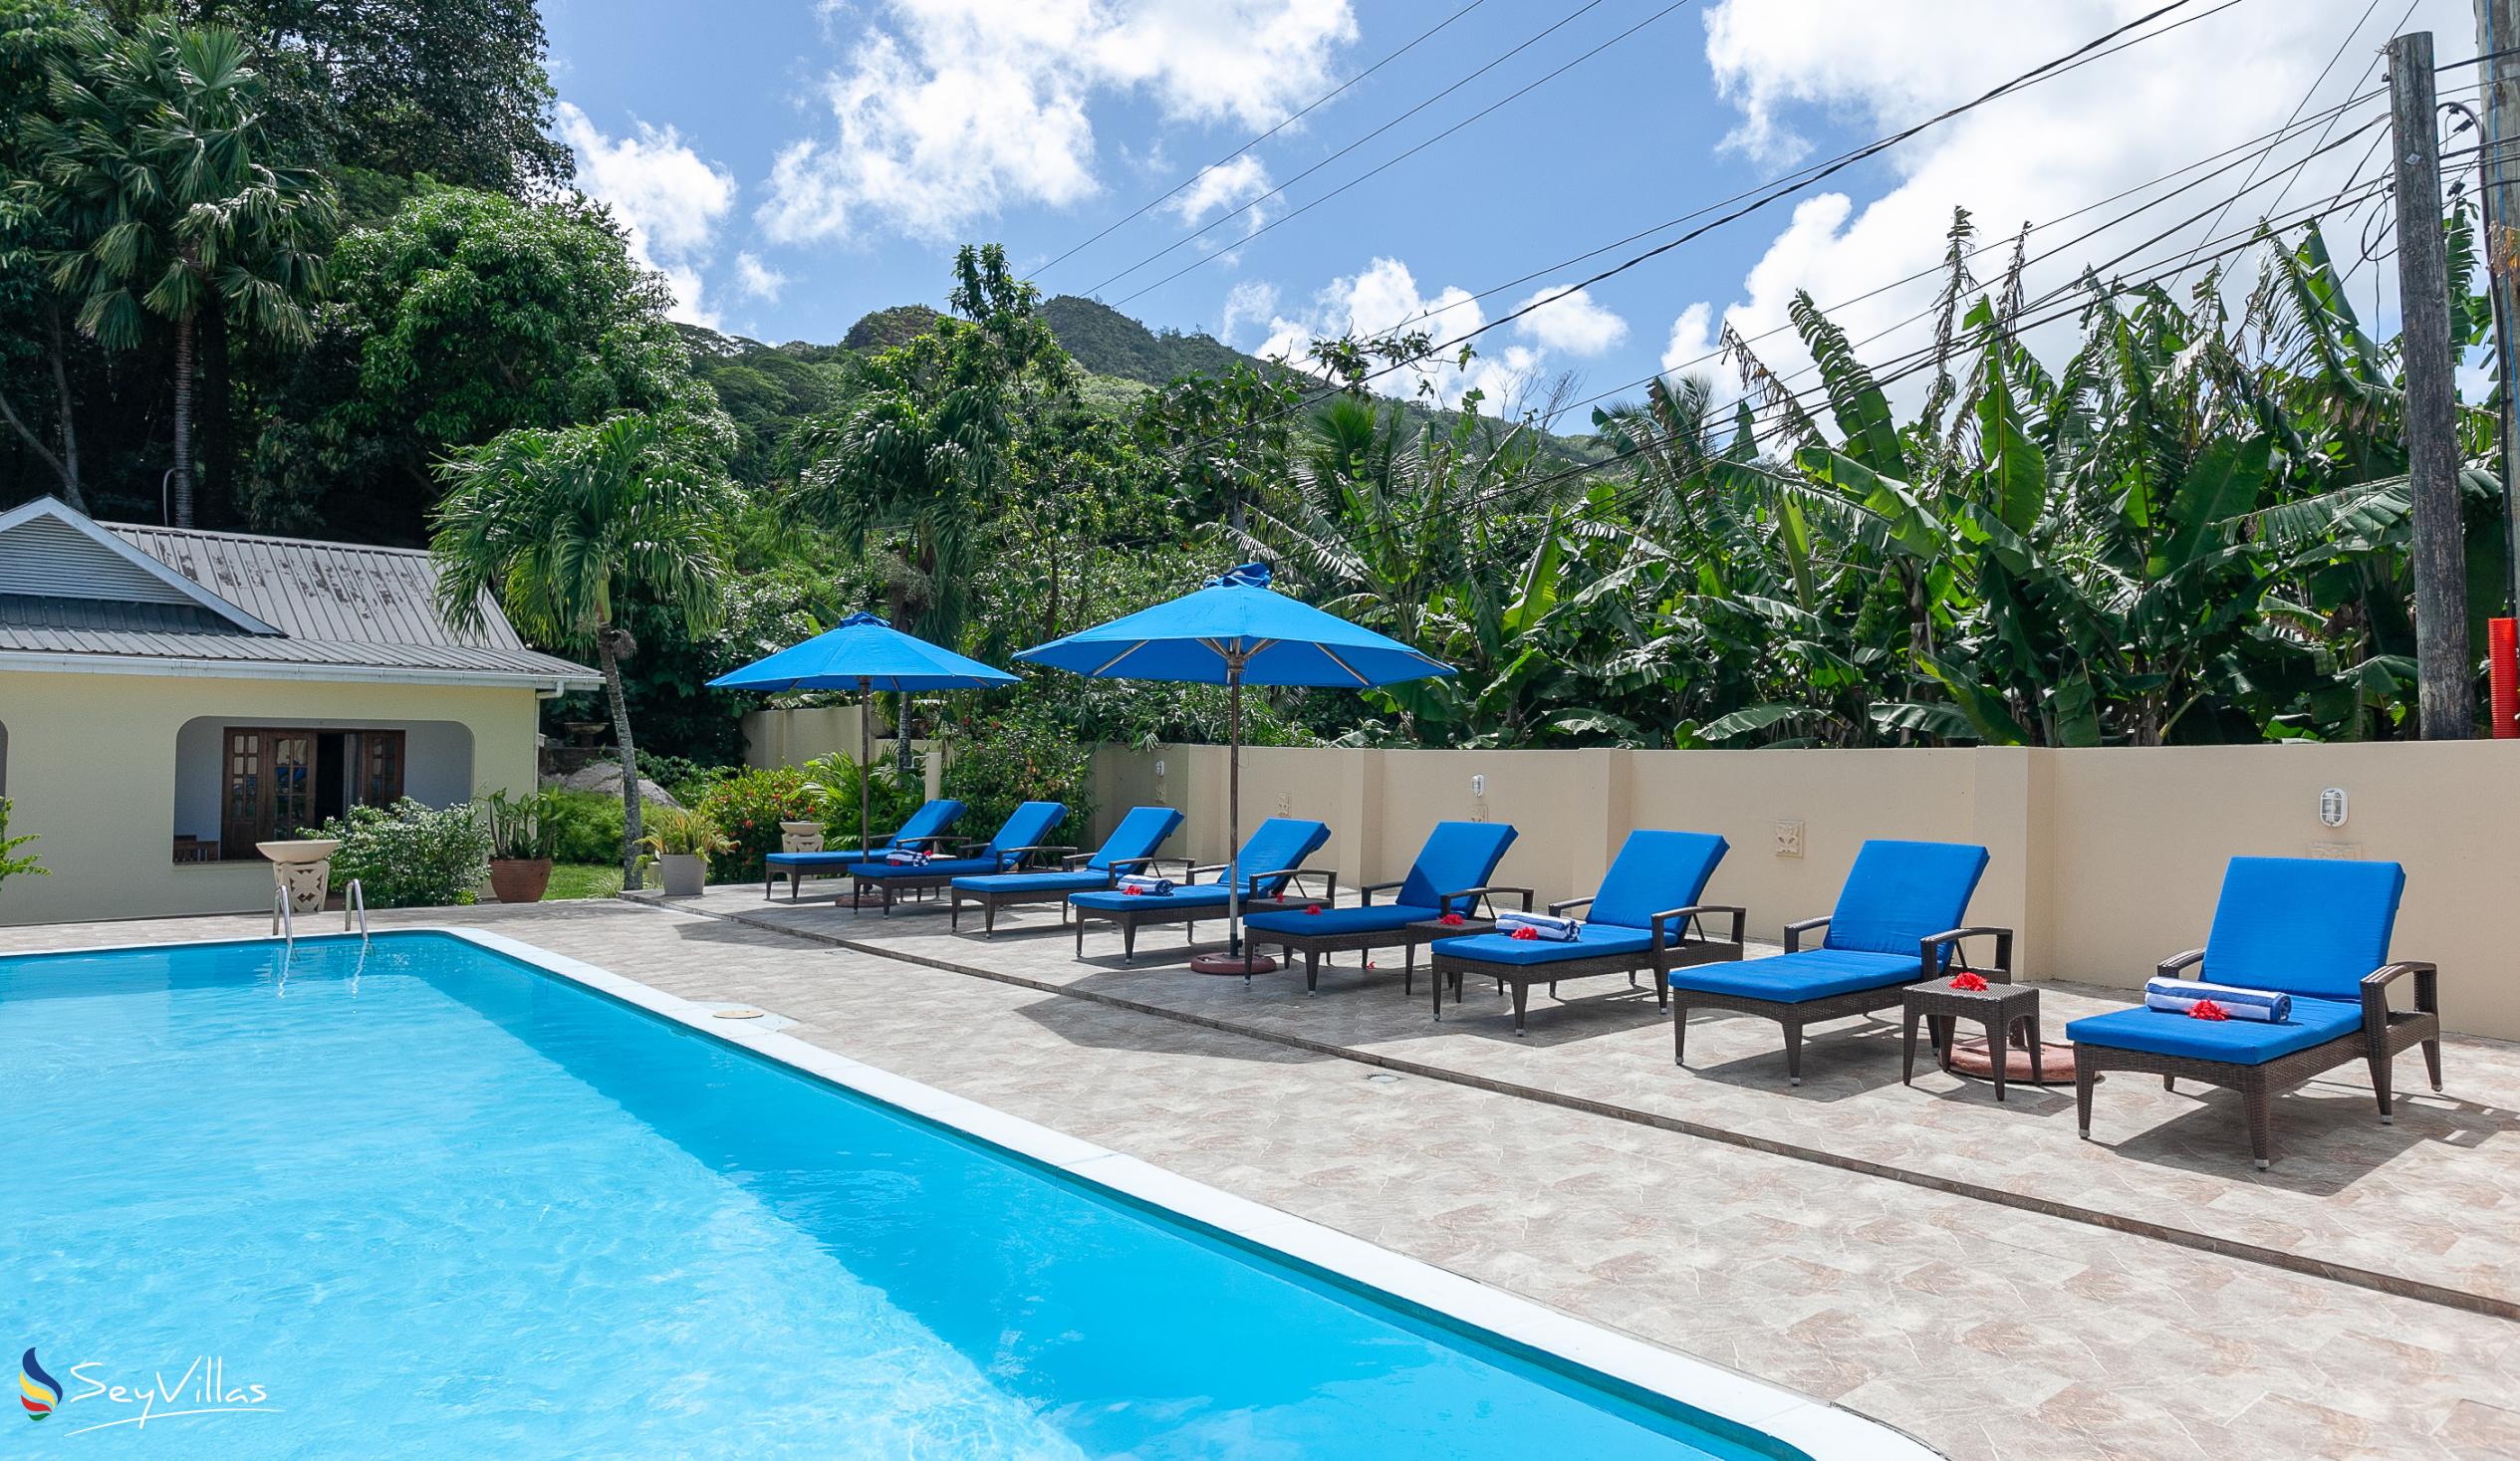 Foto 5: Britannia Hotel - Aussenbereich - Praslin (Seychellen)